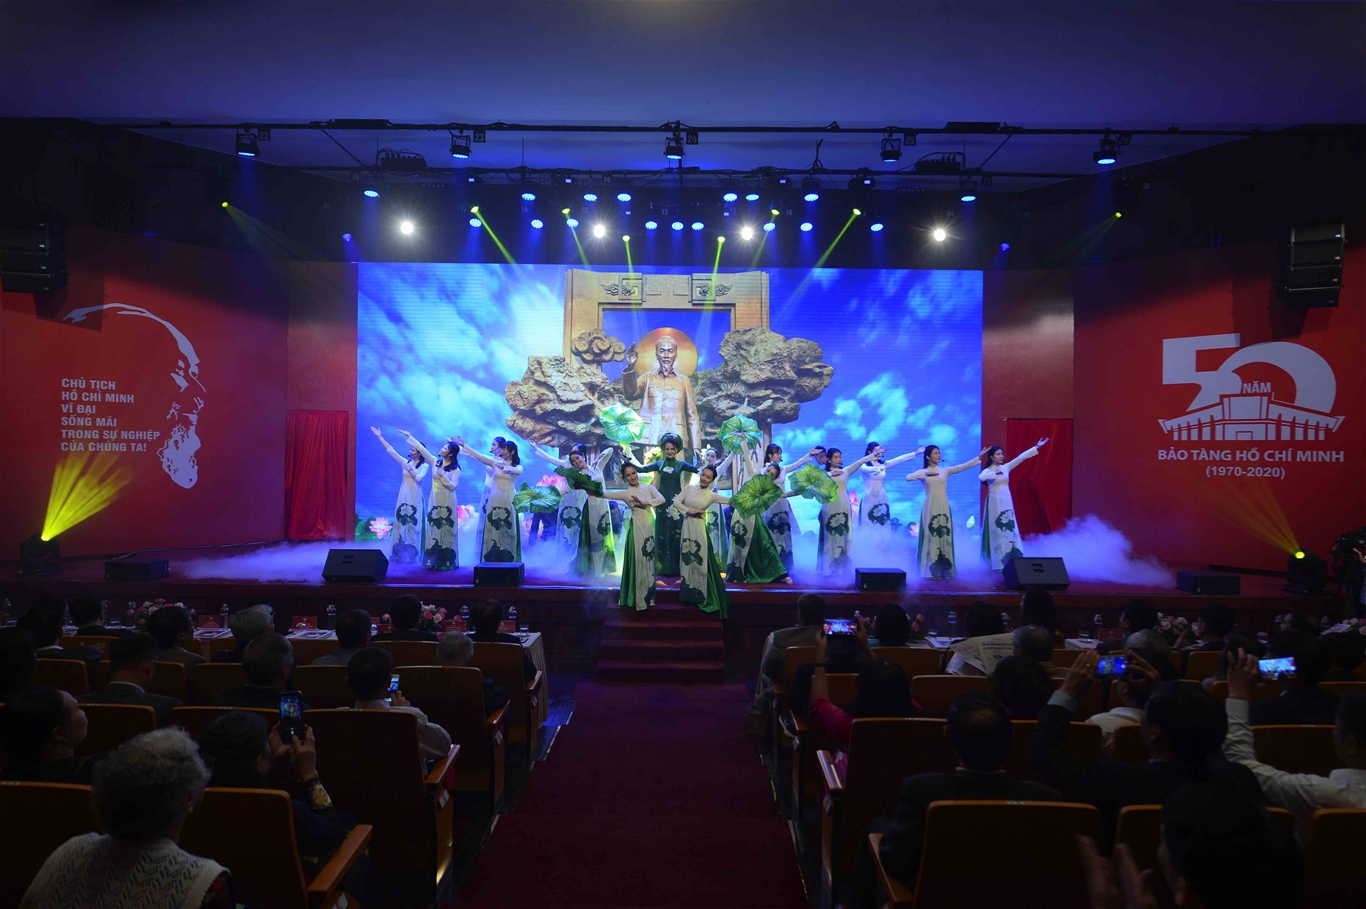 Lễ kỷ niệm 50 năm thành lập Bảo tàng Hồ Chí Minh “CHẠM DÒNG LỊCH SỬ”